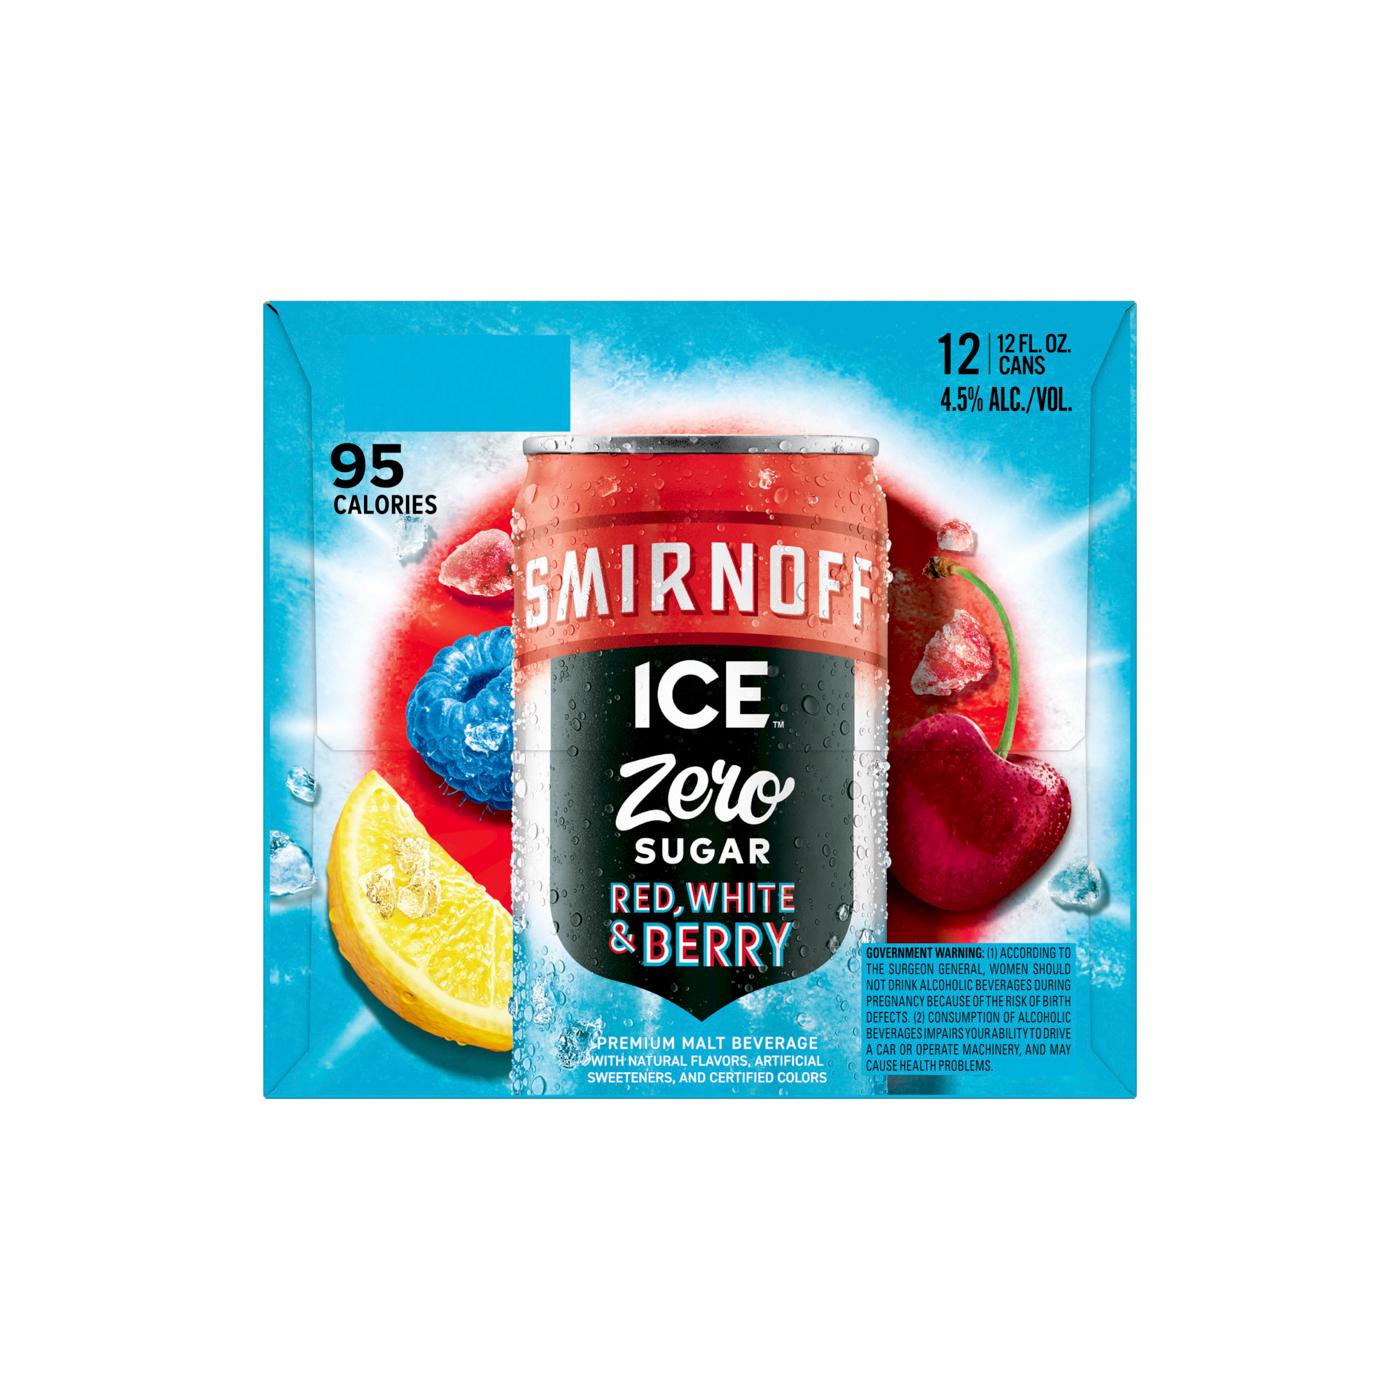 Smirnoff Ice Zero Sugar Red, White, Berry; image 2 of 4